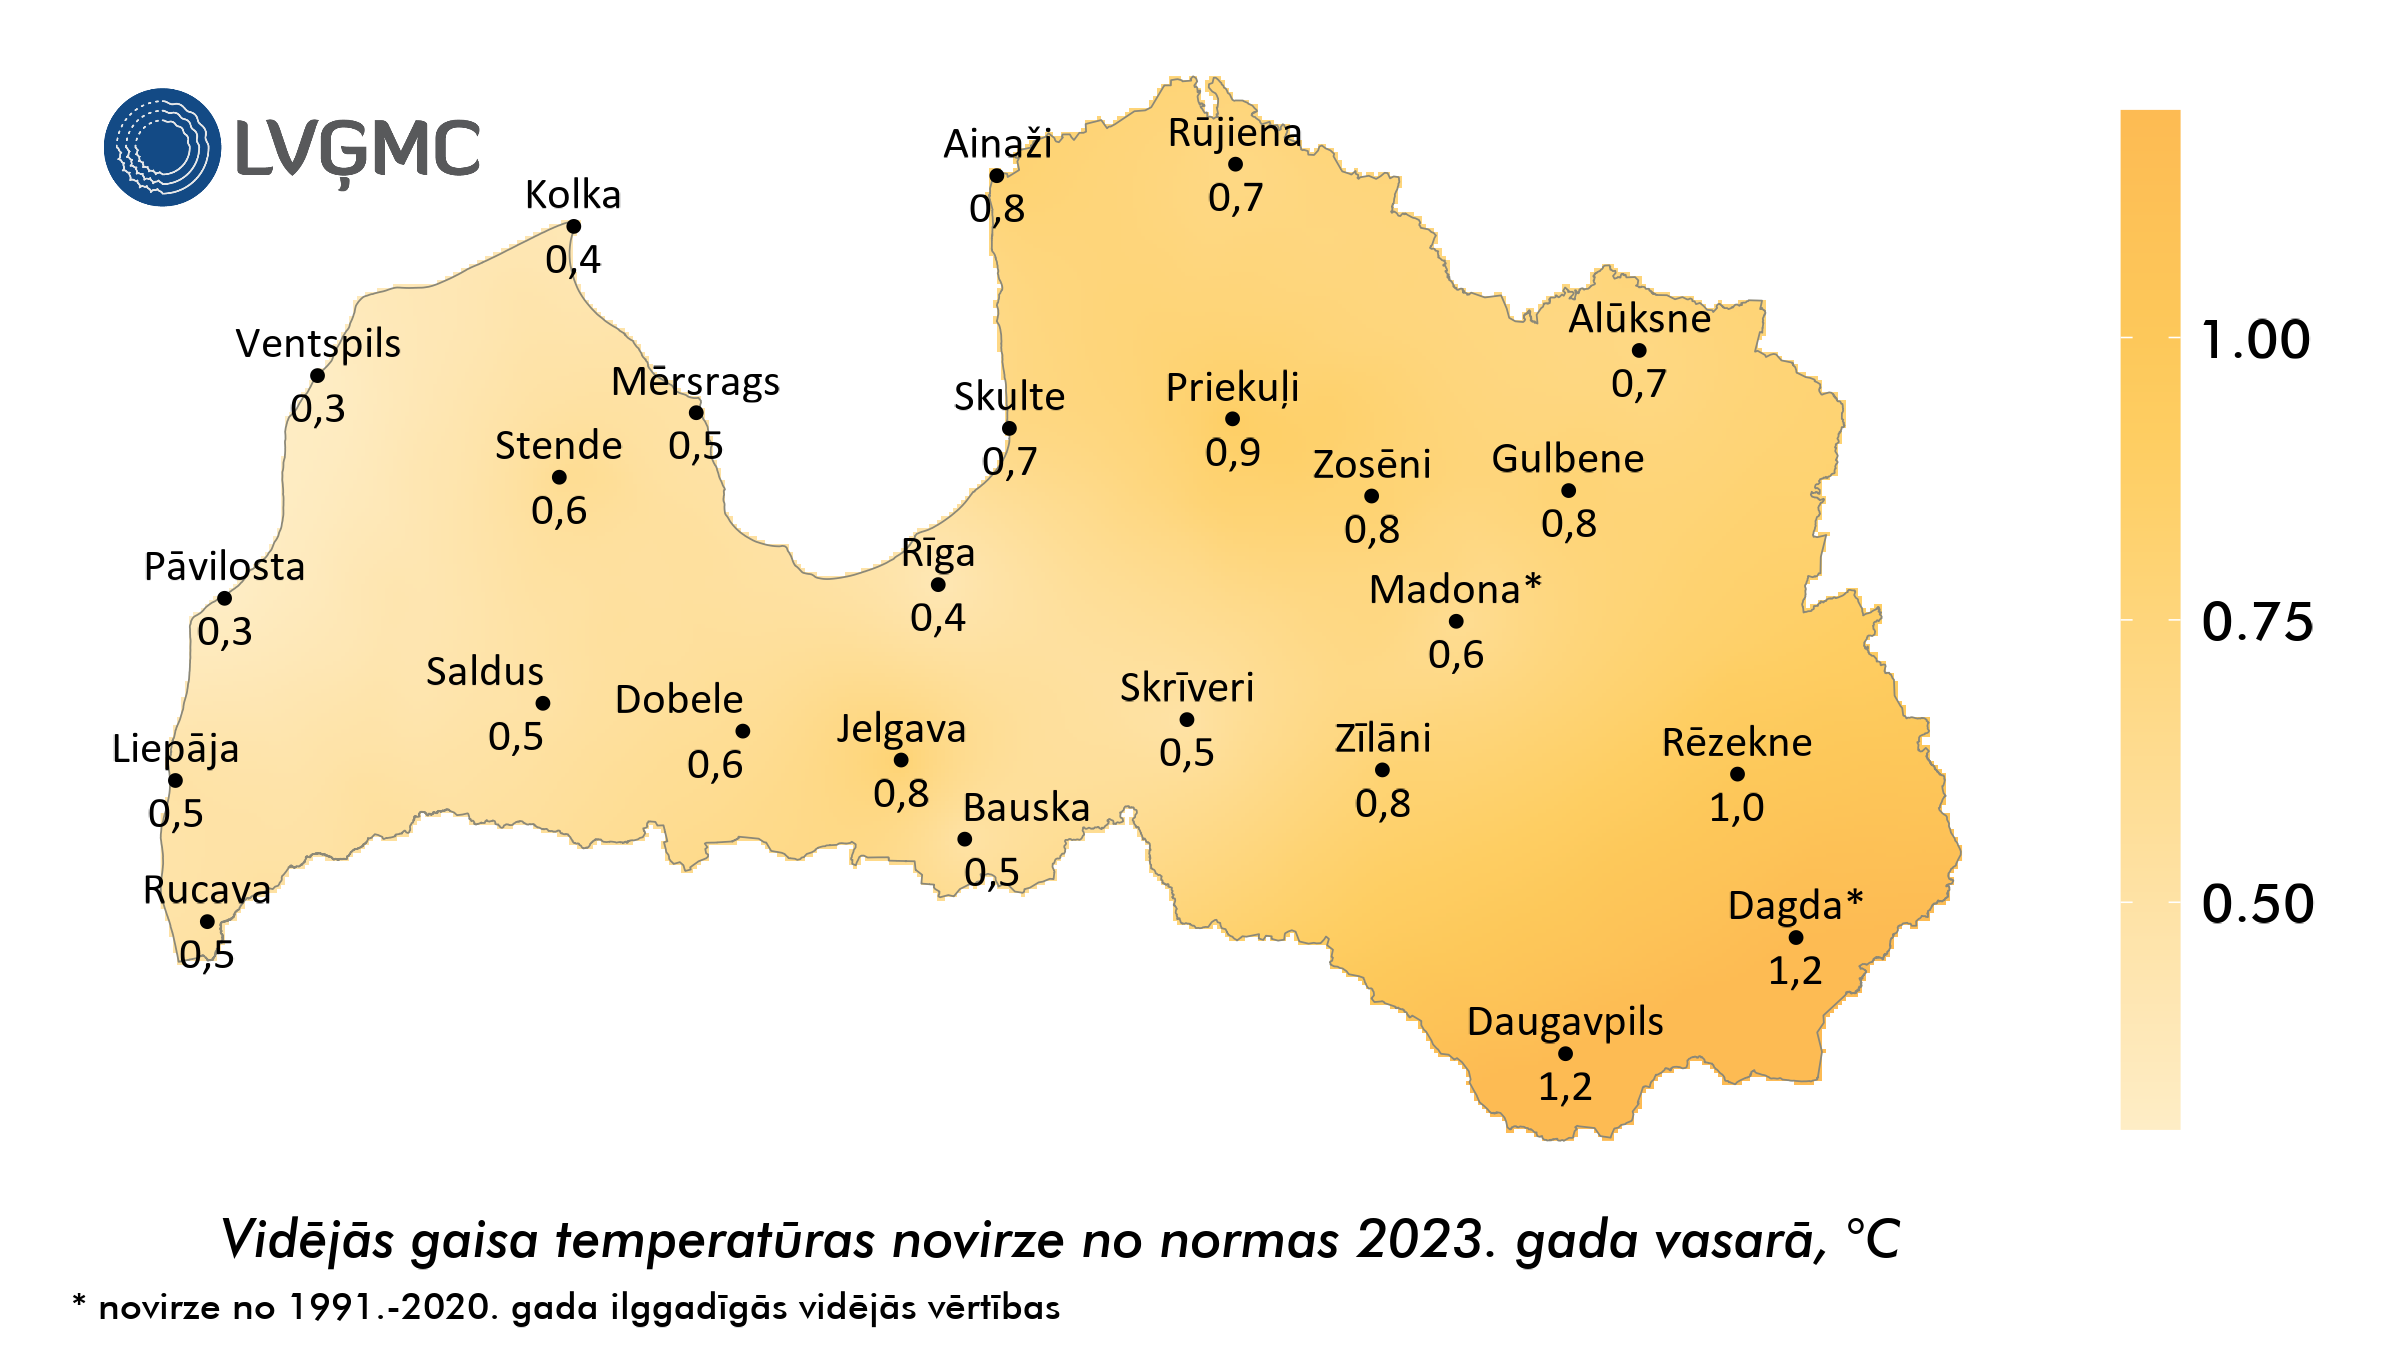 Vidējās gaisa temperatūras novirze no normas 2023. gada vasarā, °C